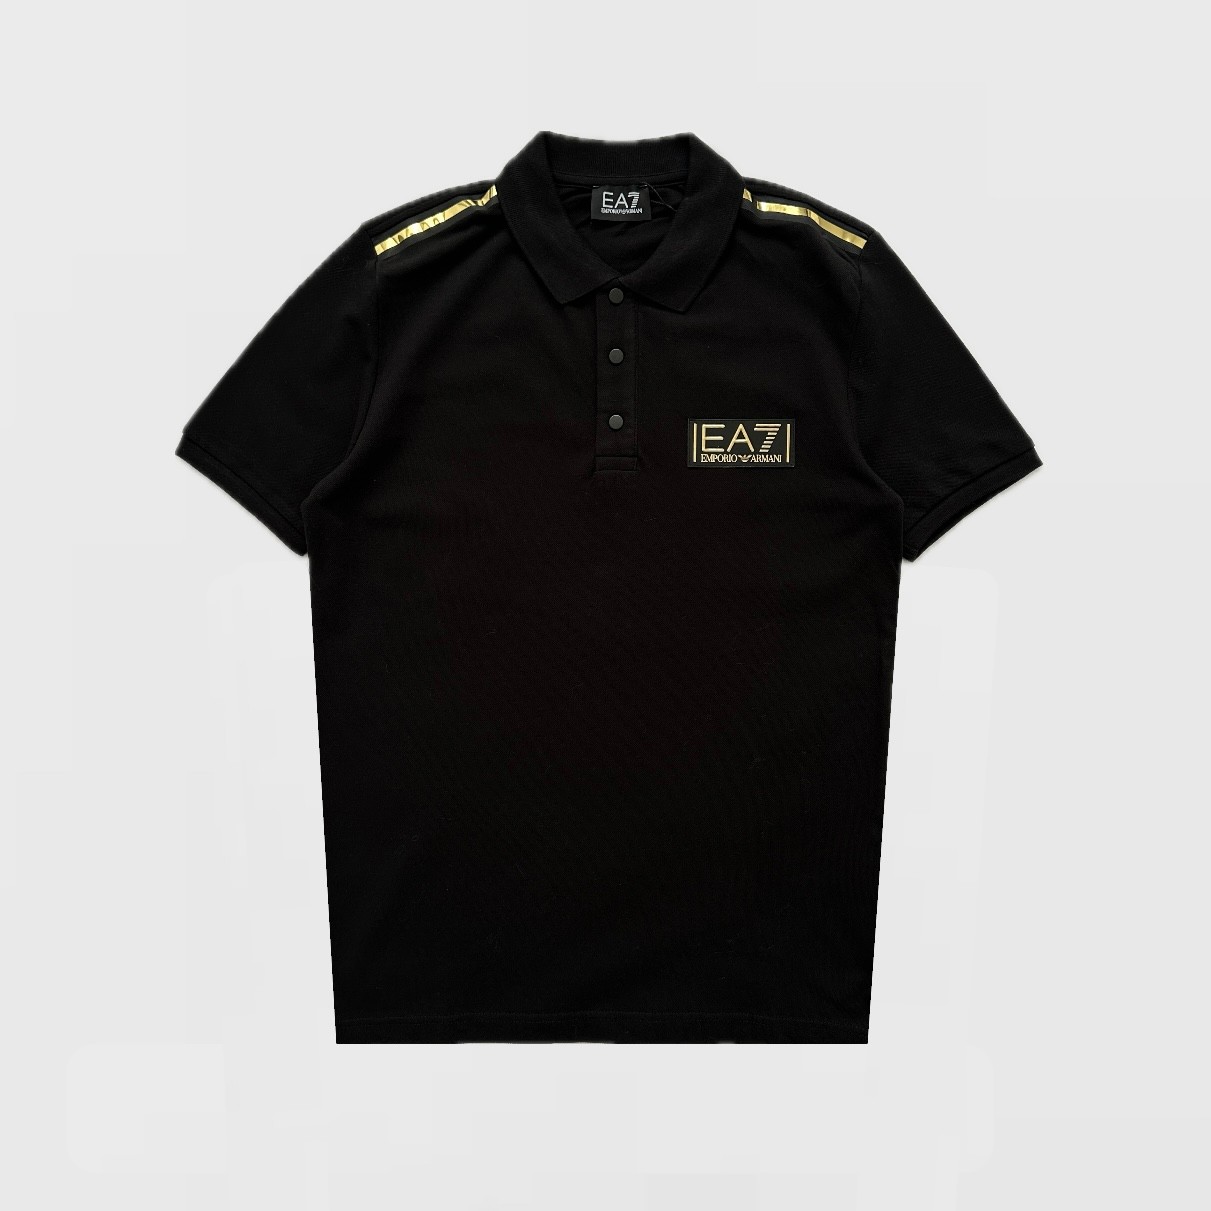 EA7 Gold Logo Polo T-Shirt - Siyah/Altın